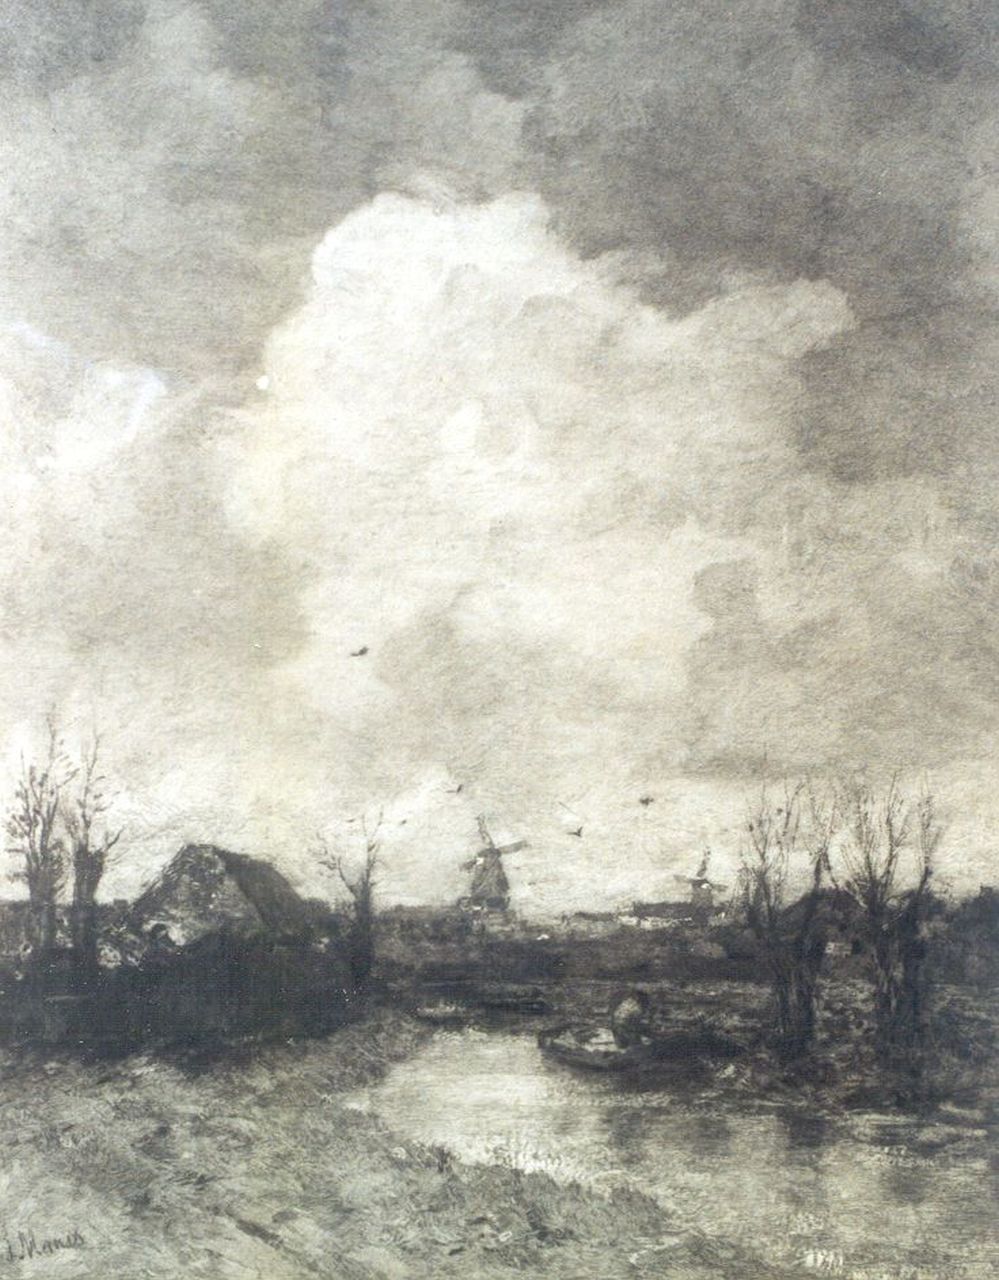 Johannes Graadt van Roggen | Landschap in de omgeving van Den Haag, naar J.H. Maris, ets op papier, 50,0 x 63,0 cm, gesigneerd r.o.